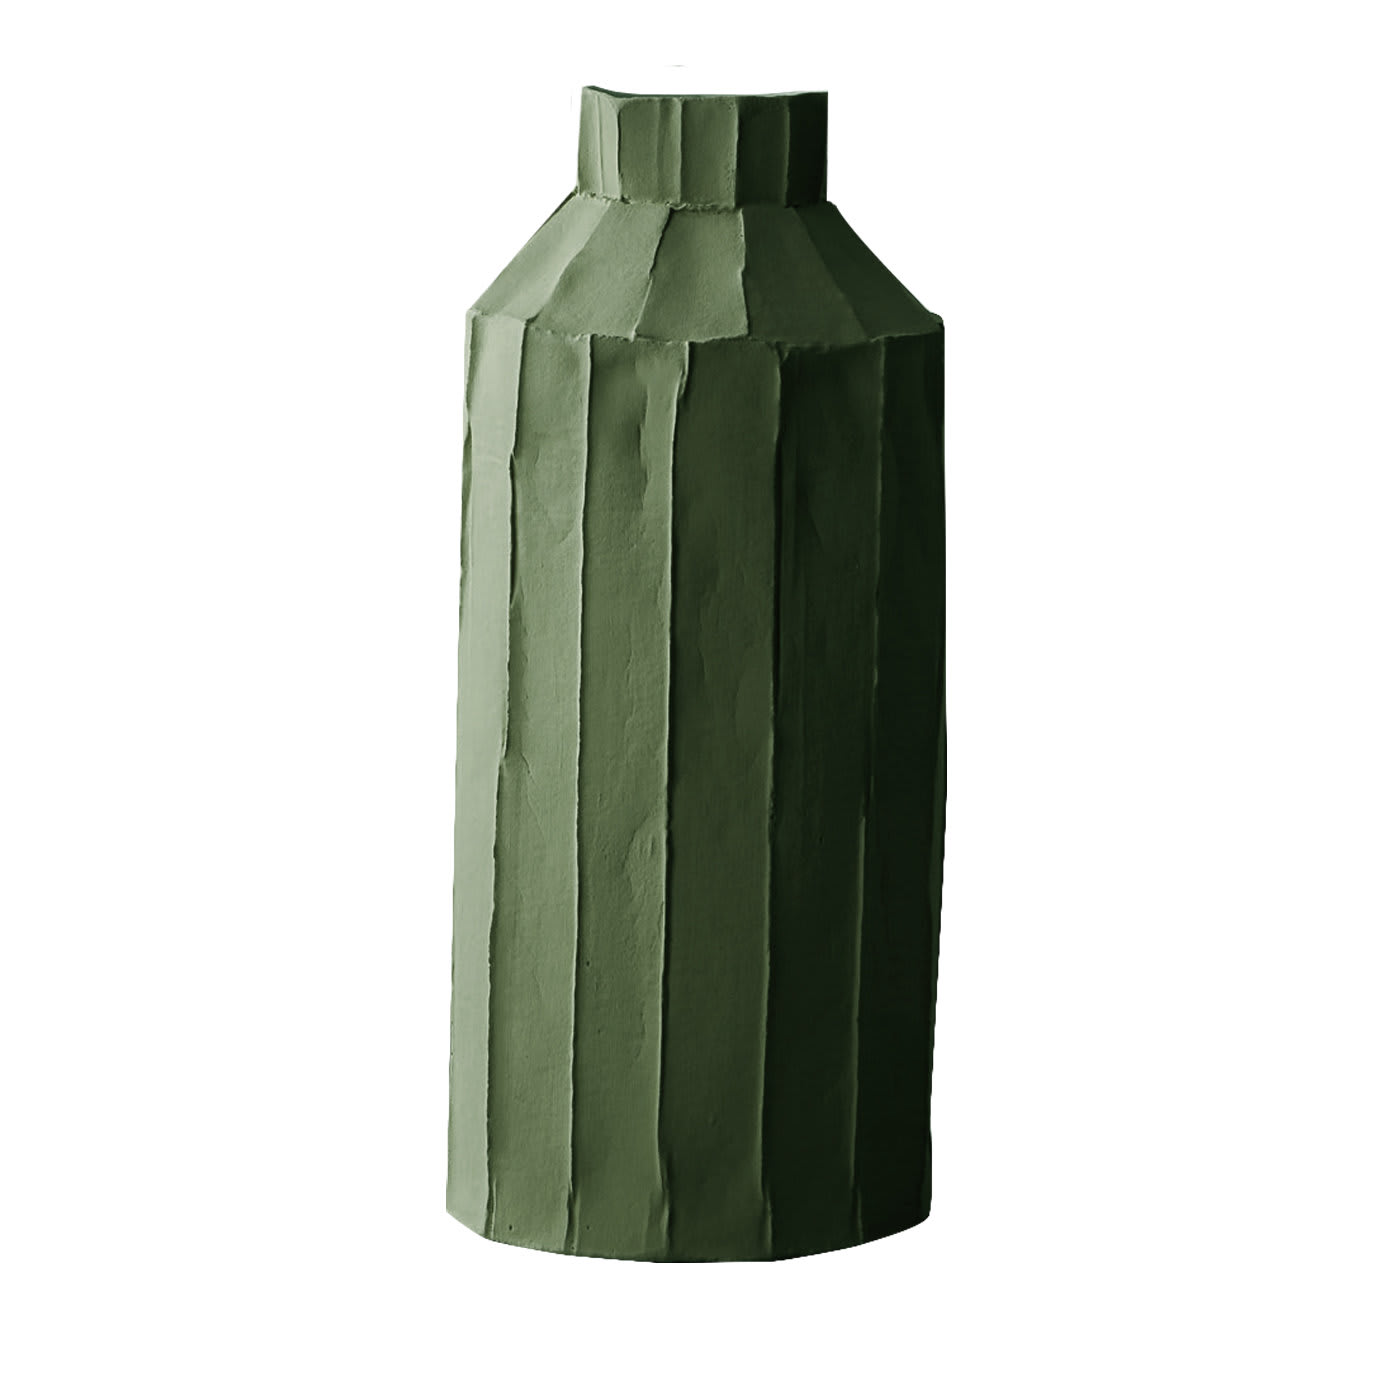 Cartocci Corteccia Fide Sage Green Vase - Paola Paronetto